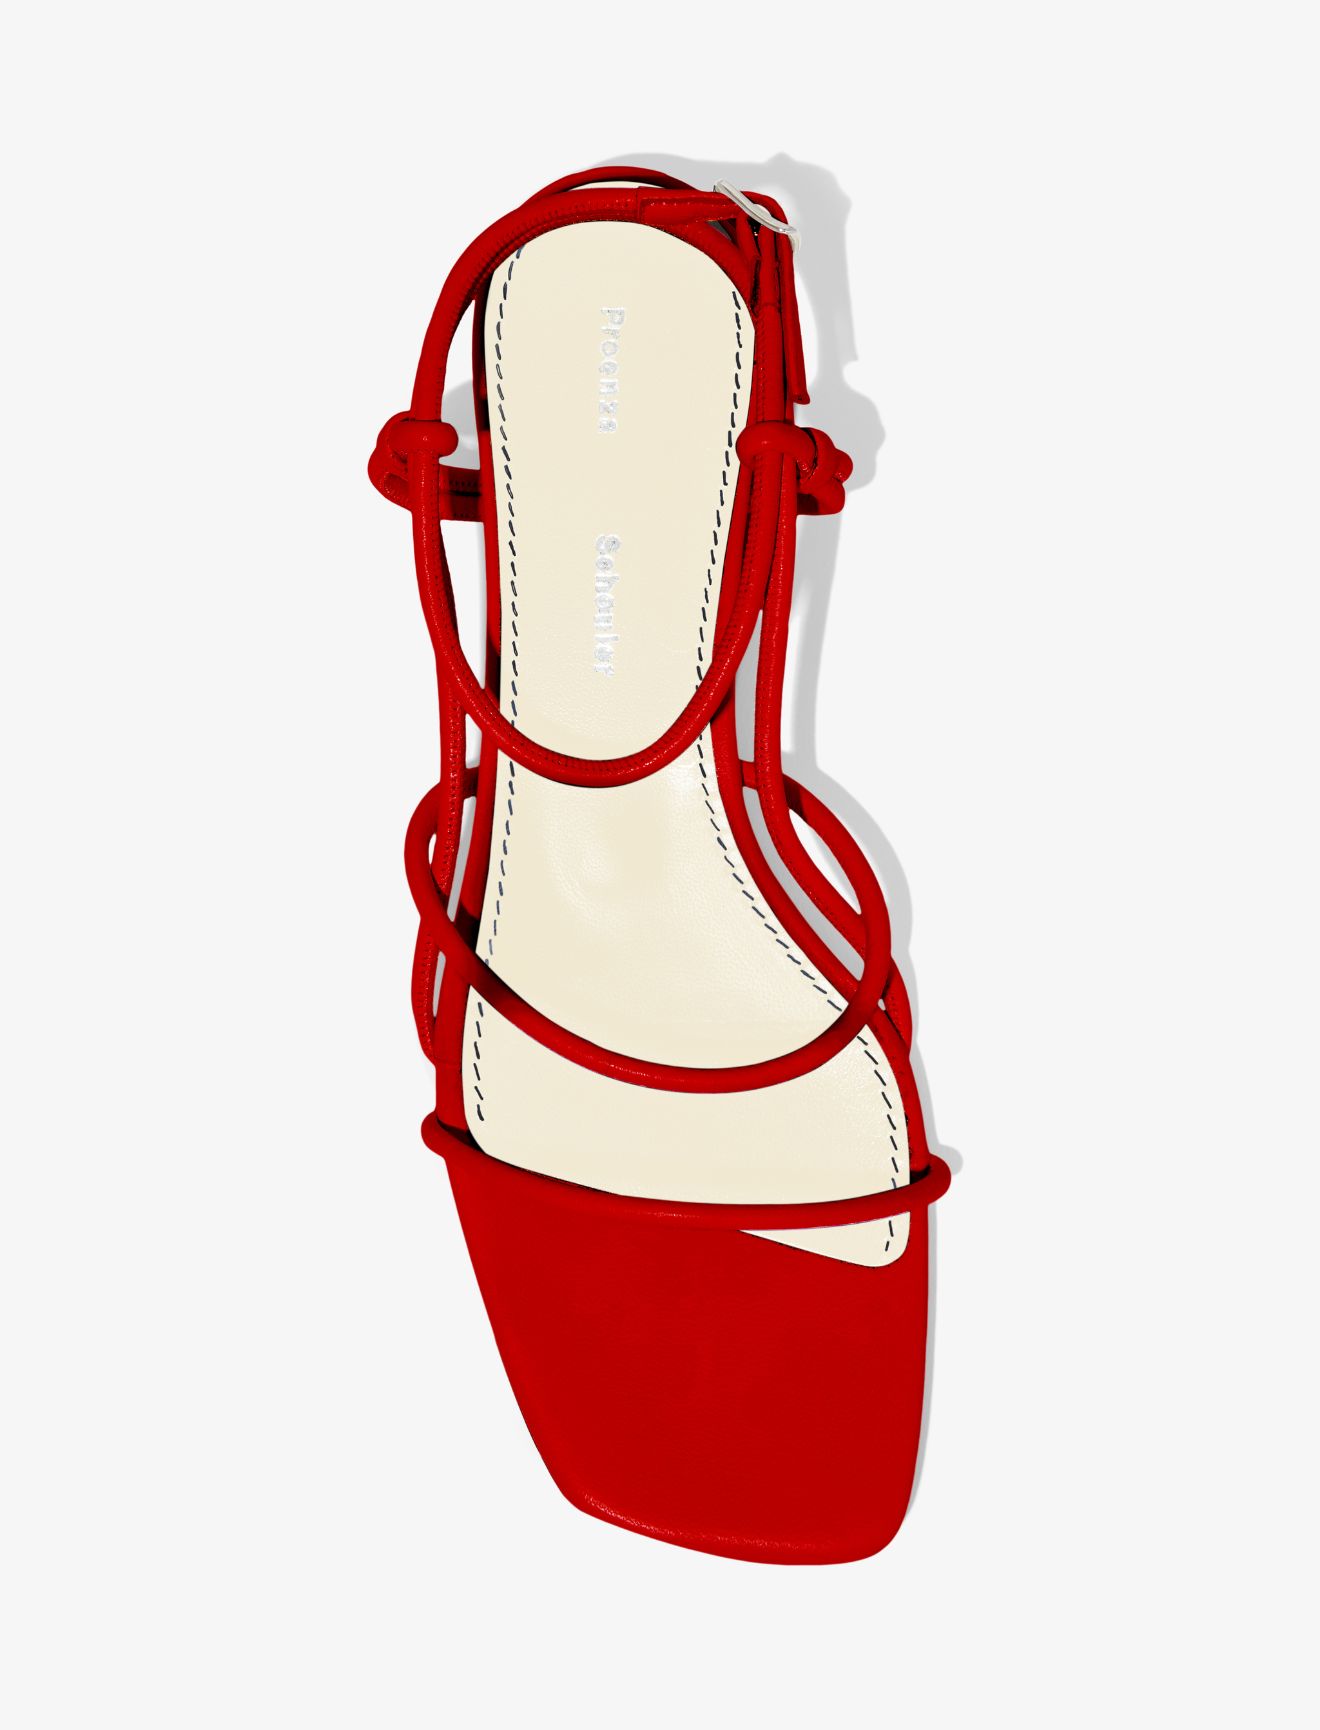 sandal heels red